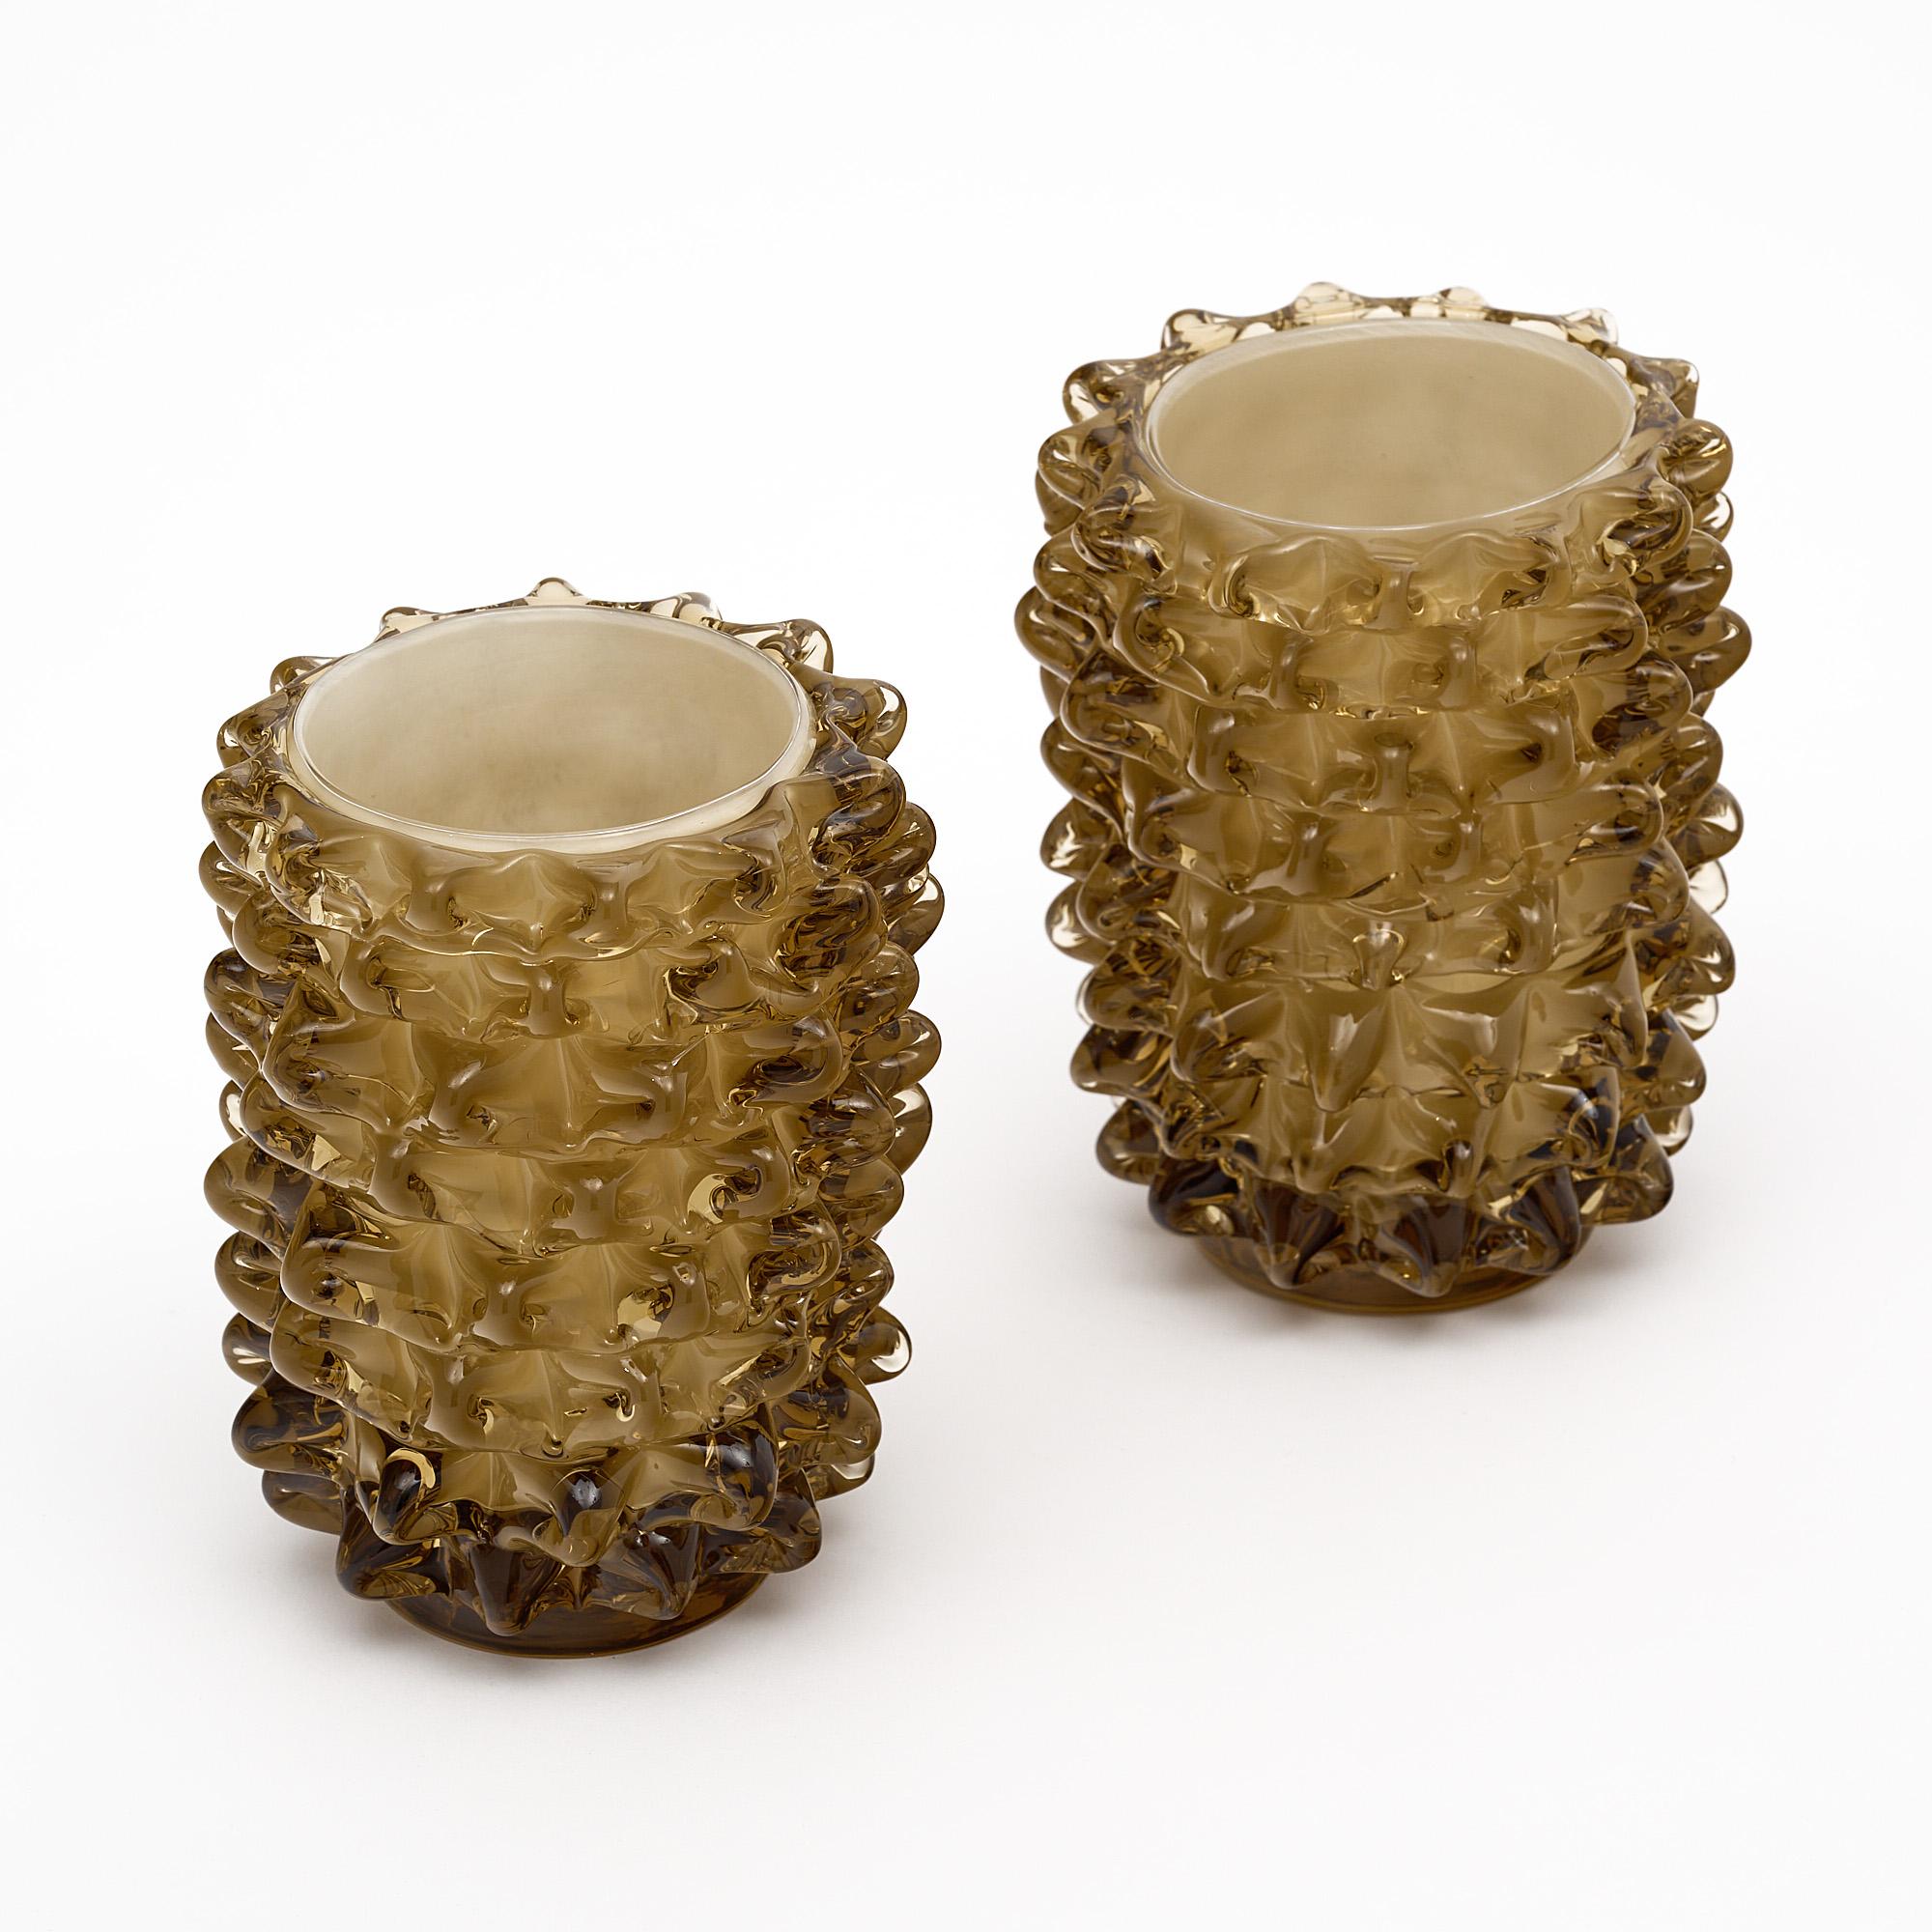 Paar Vasen aus Murano-Glas, italienisch, von der Insel Murano. Dieses mundgeblasene Paar hat eine schöne taupefarbene Farbe und ist mit der Rostate-Technik hergestellt.